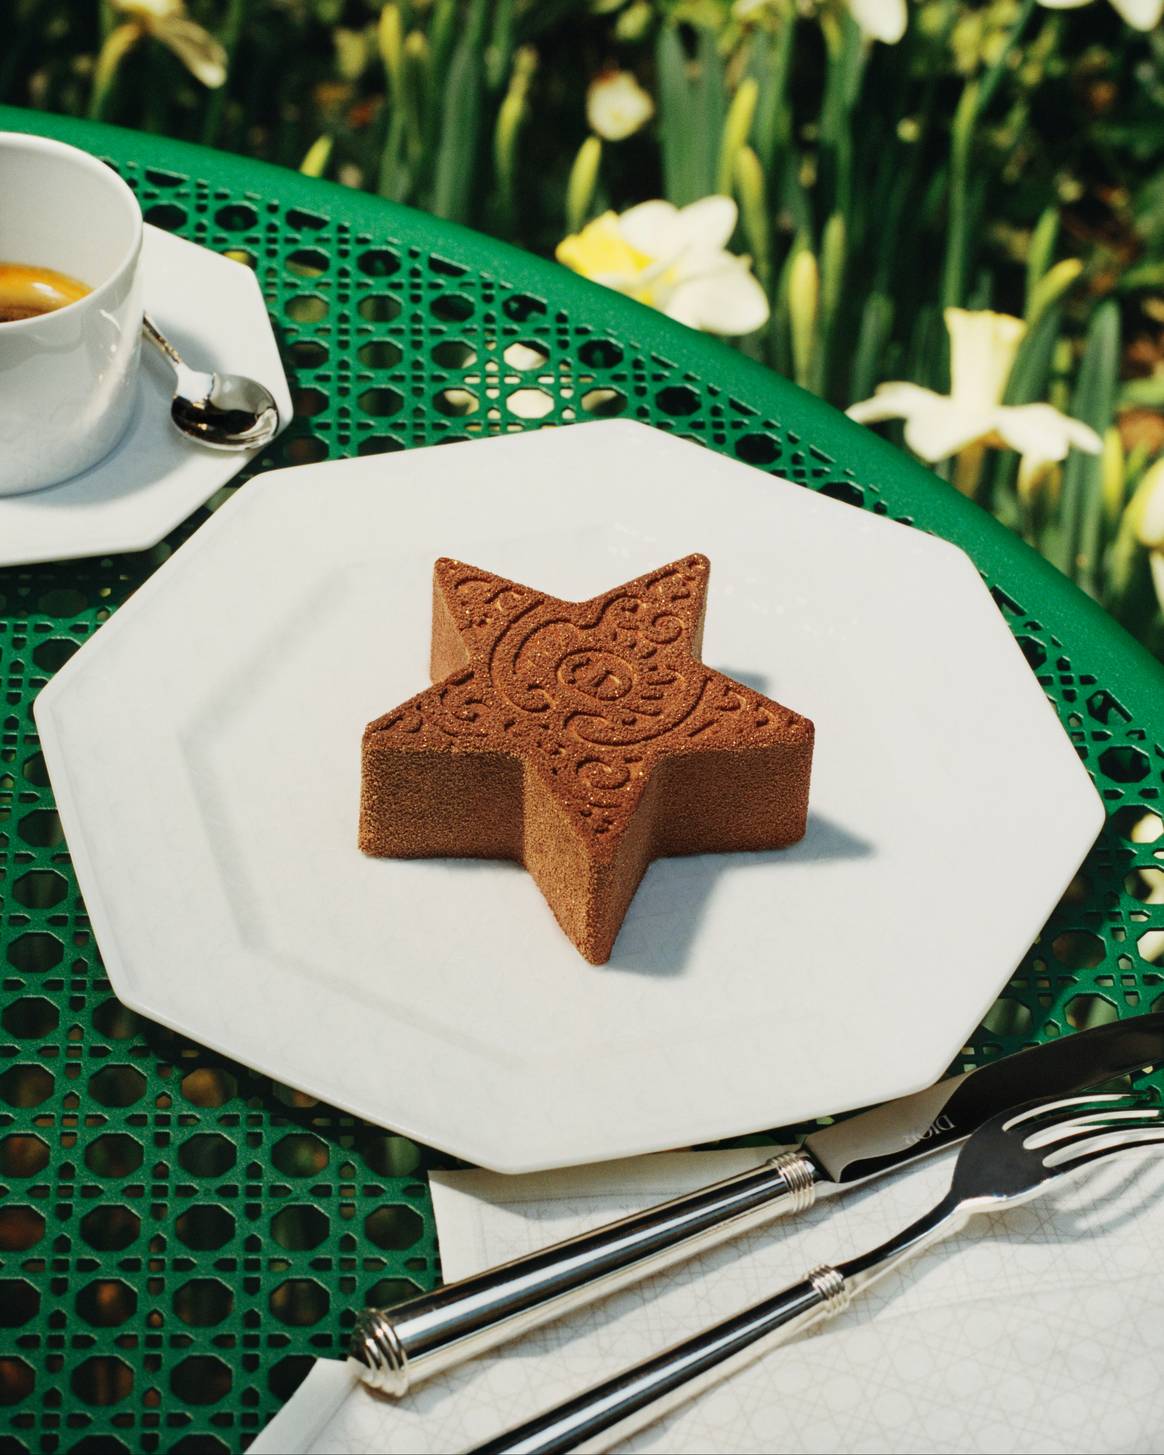 Sternenförmiges Dessert, das an den Dior Stern erinnert. Bild: Dior